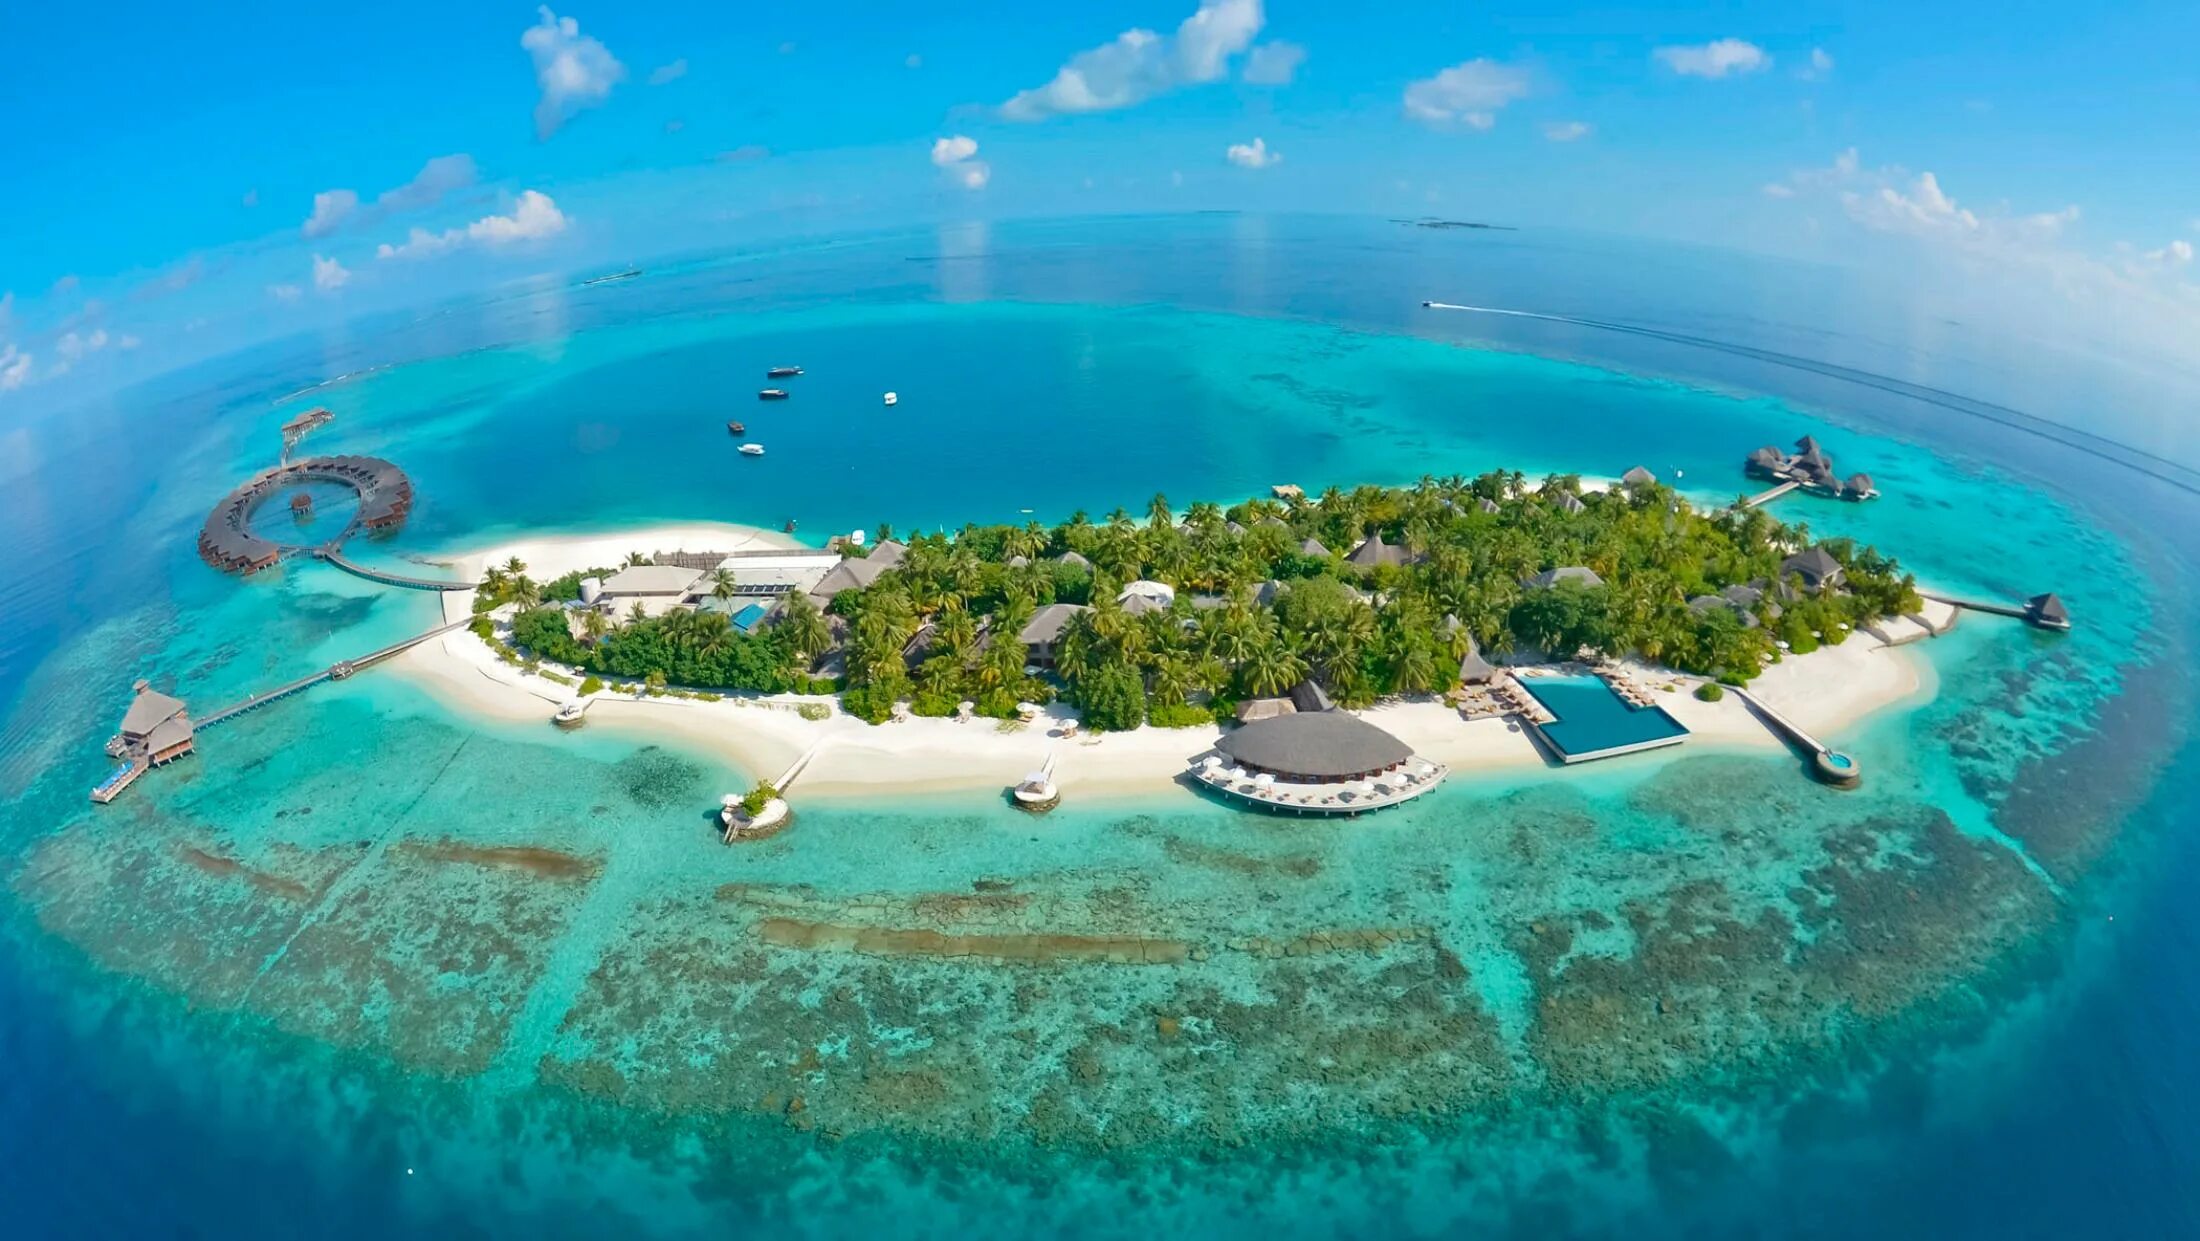 Атолл Адду Мальдивы. Хувафен Фуши Мальдивы. Парадайз Айленд риф Мальдивы. Остров Дигура Мальдивы. Страна в которой есть остров